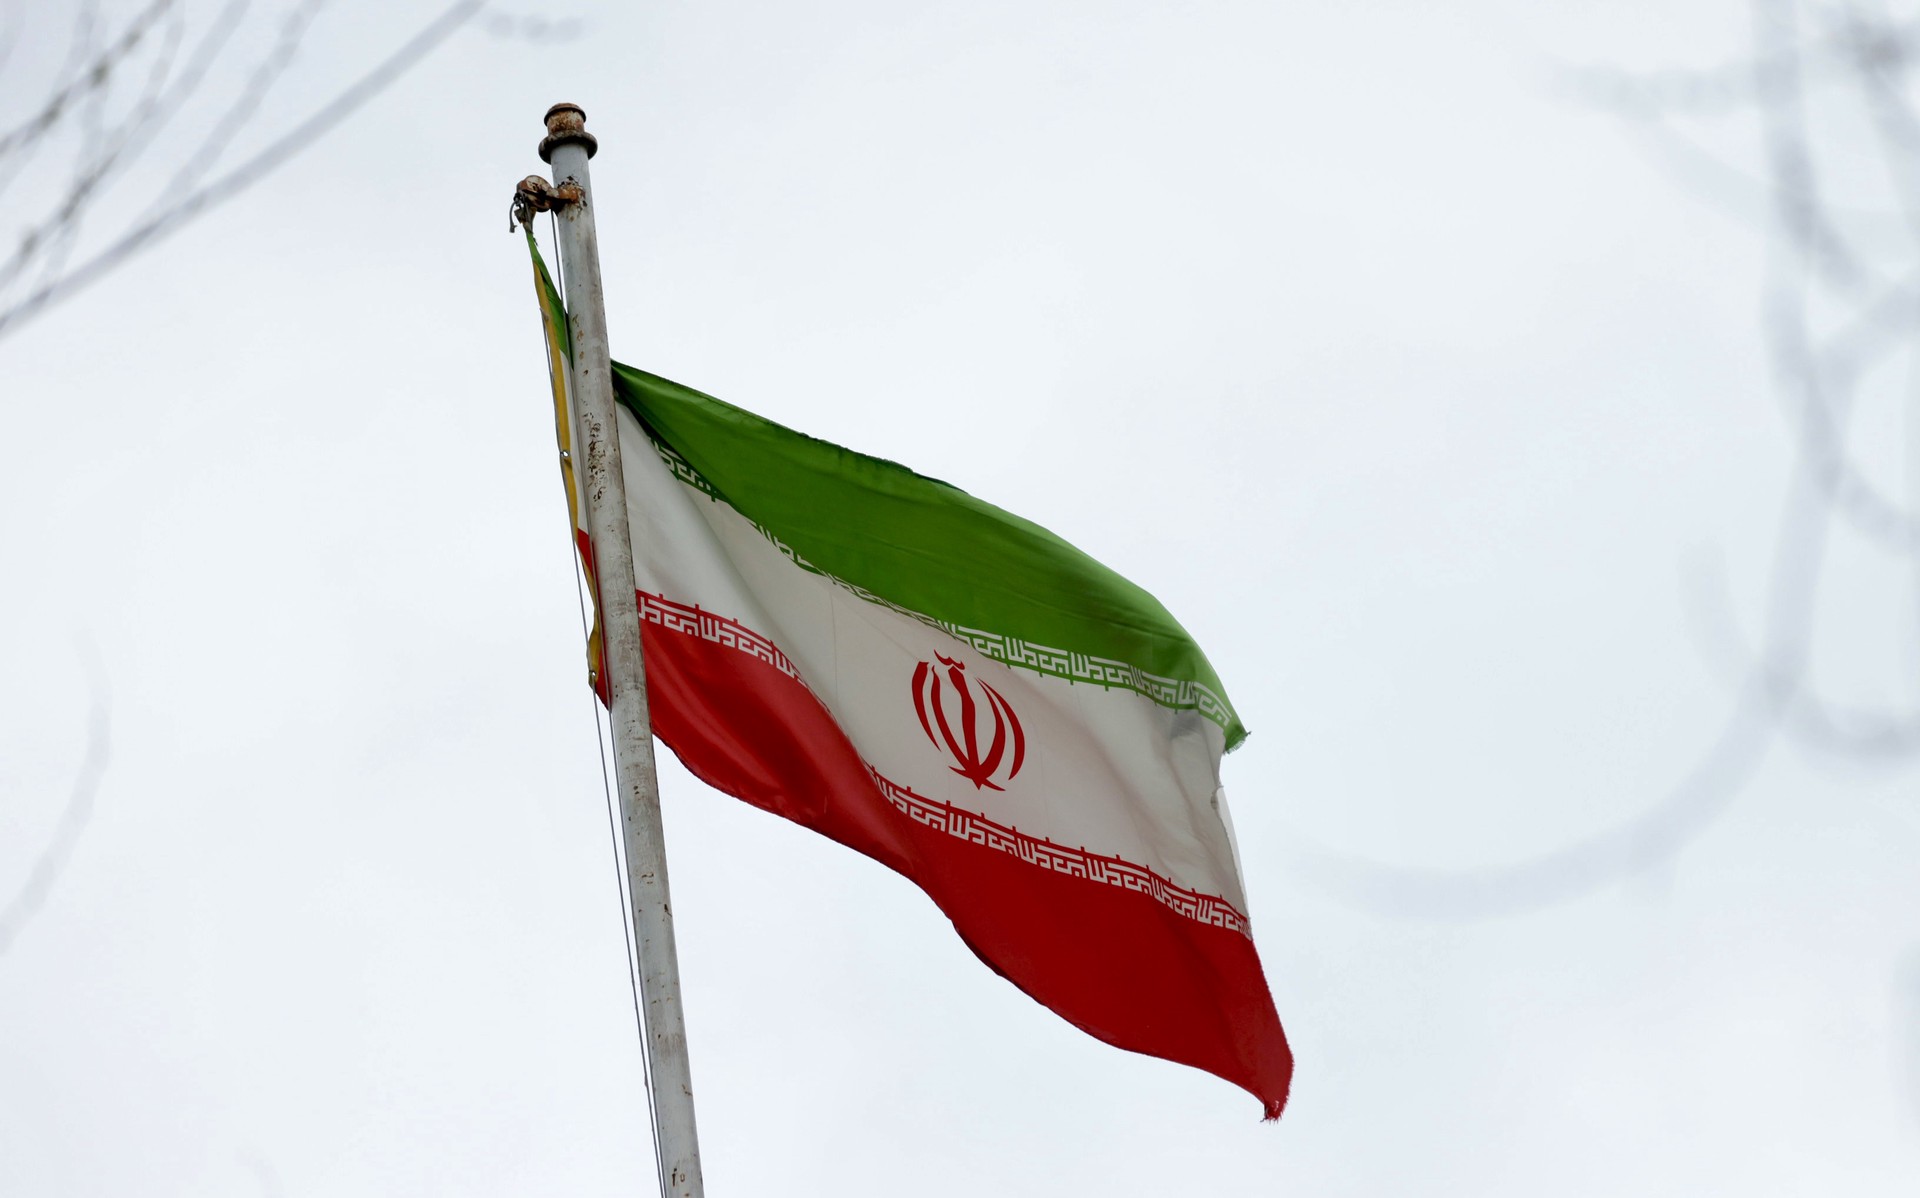 Europe 1: Неизвестный собирается взорвать иранское консульство в Париже